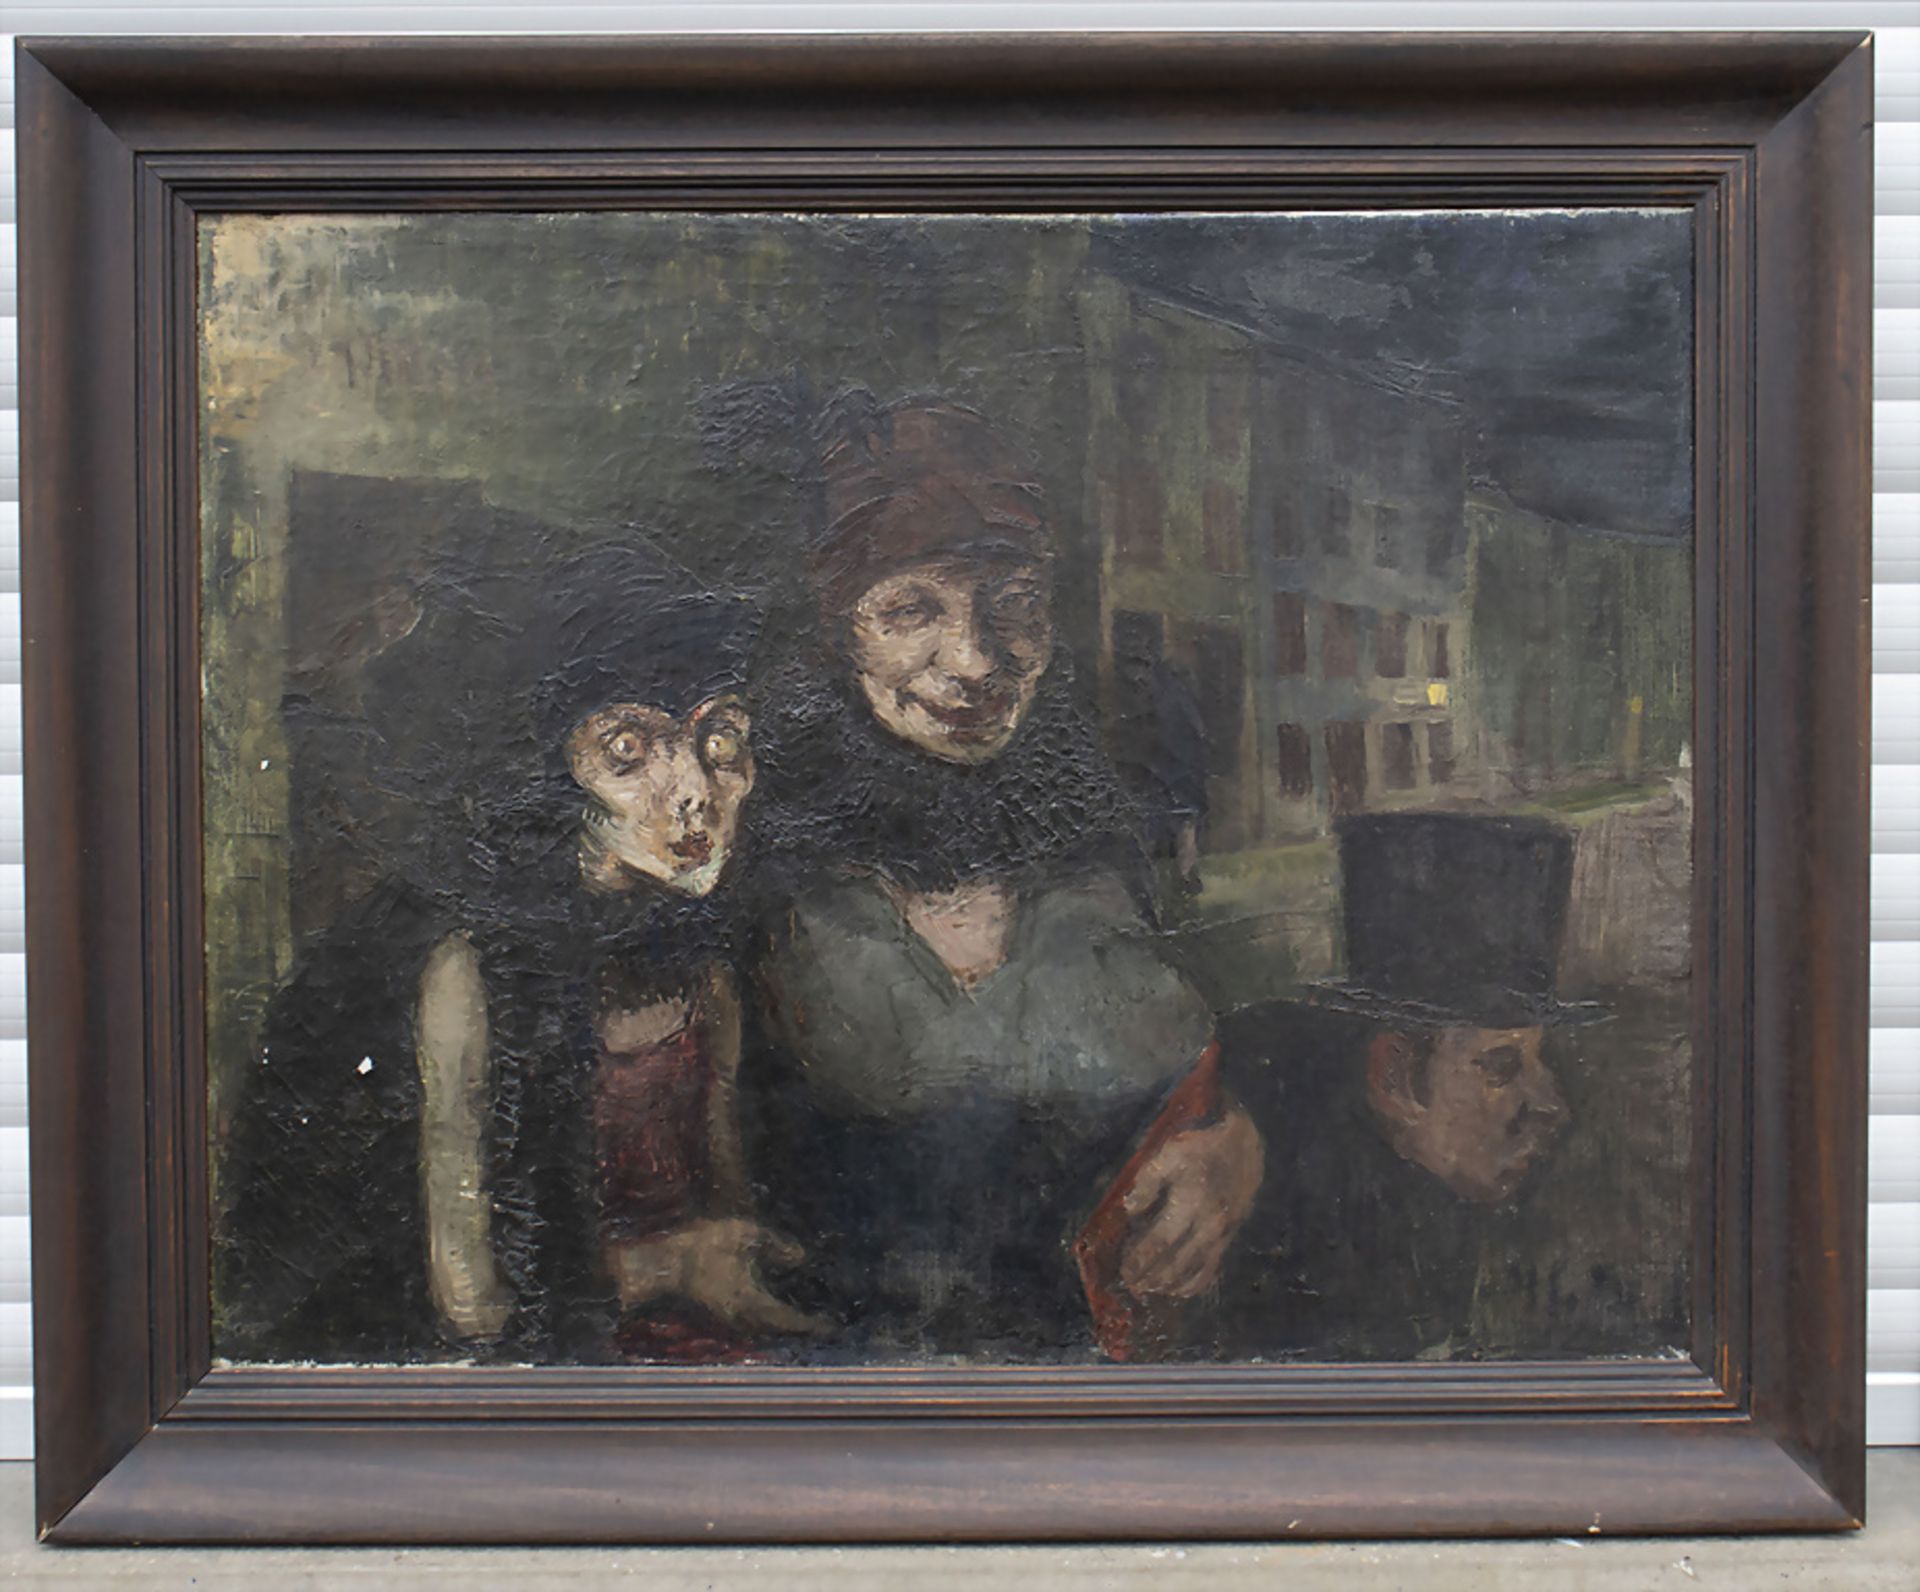 Miron SIMA (1902-1999), 'Eine dunkle Gasse' / 'A dark alley', 1929